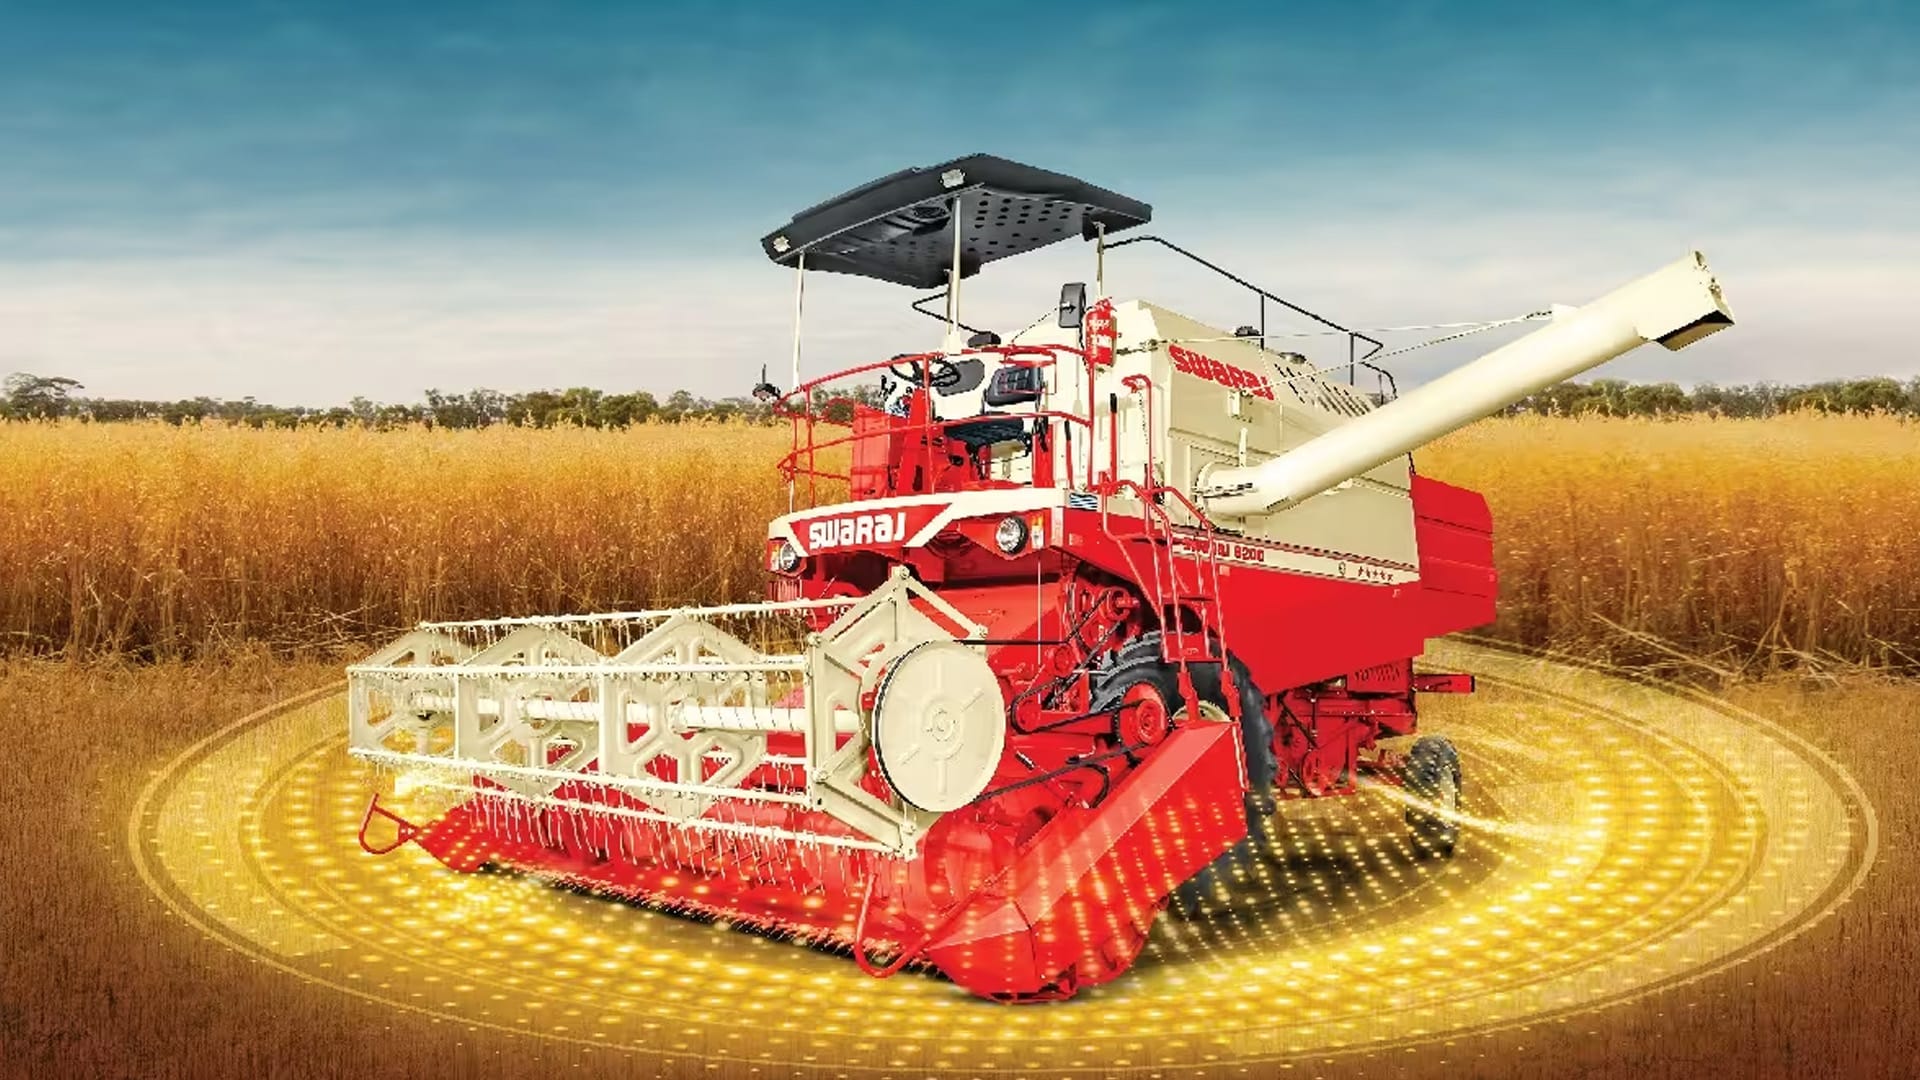 Mahindra & Mahindra rolls out new wheel harvester under Swaraj brand